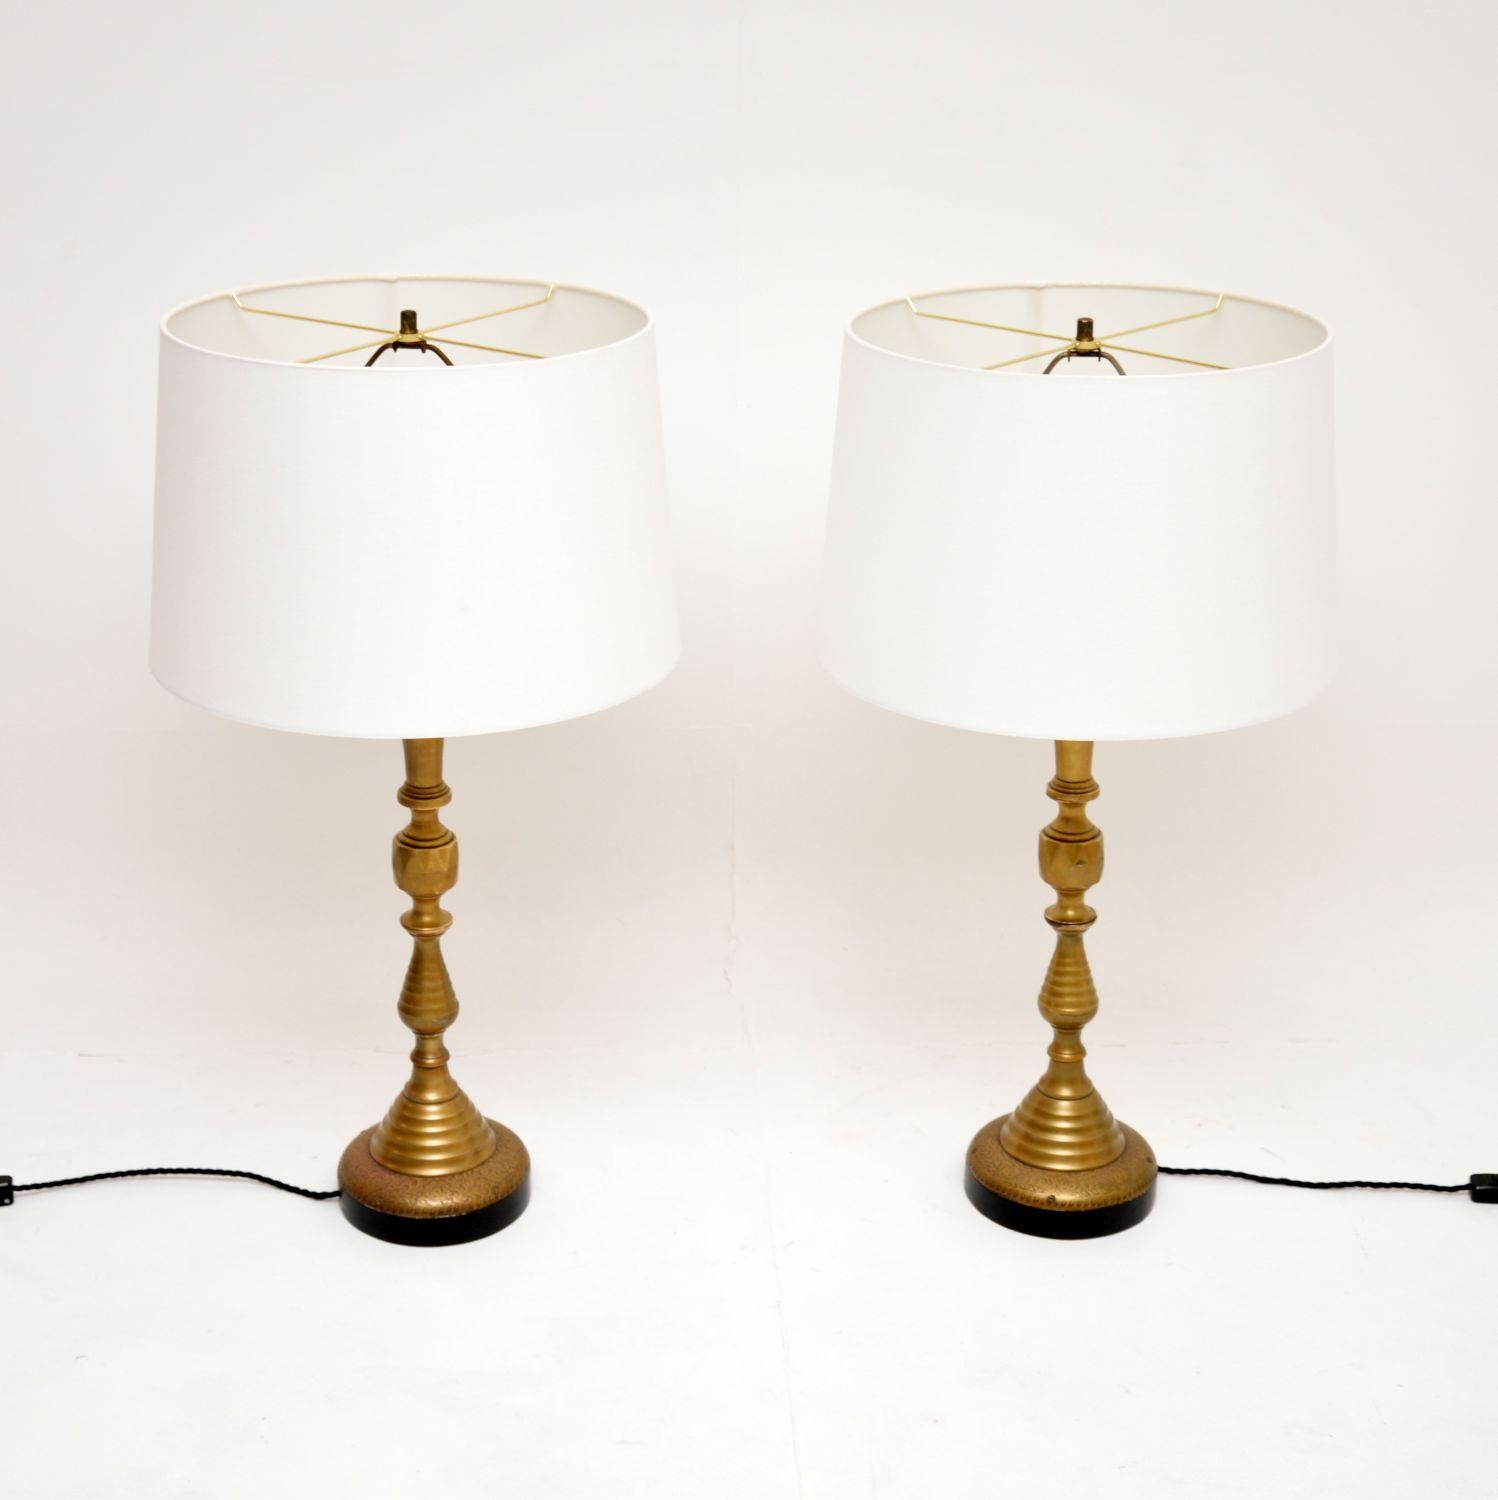 Une très impressionnante paire de lampes de table antiques en laiton, datant des années 1950.

Ils sont d'une superbe qualité, avec de belles colonnes tournées de style victorien et de jolis motifs complexes à la base.

L'état est excellent pour